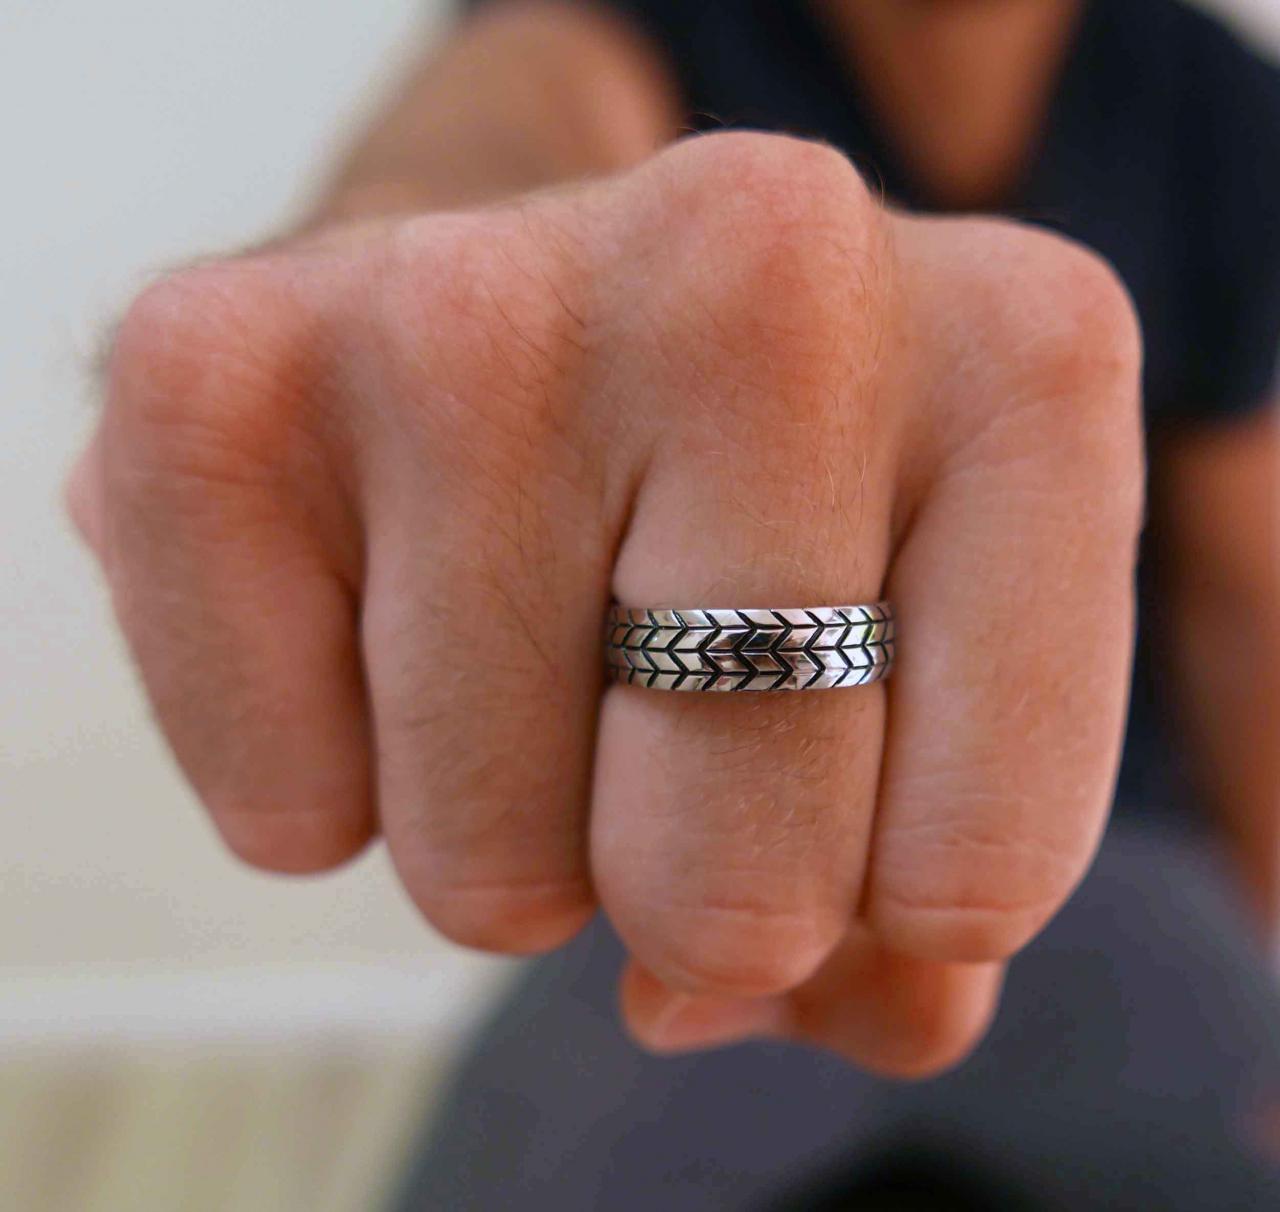 Men's Ring - Men's Silver Ring - Men's Stainless Steel Ring - Men's Silver Band - Men's Jewelry -